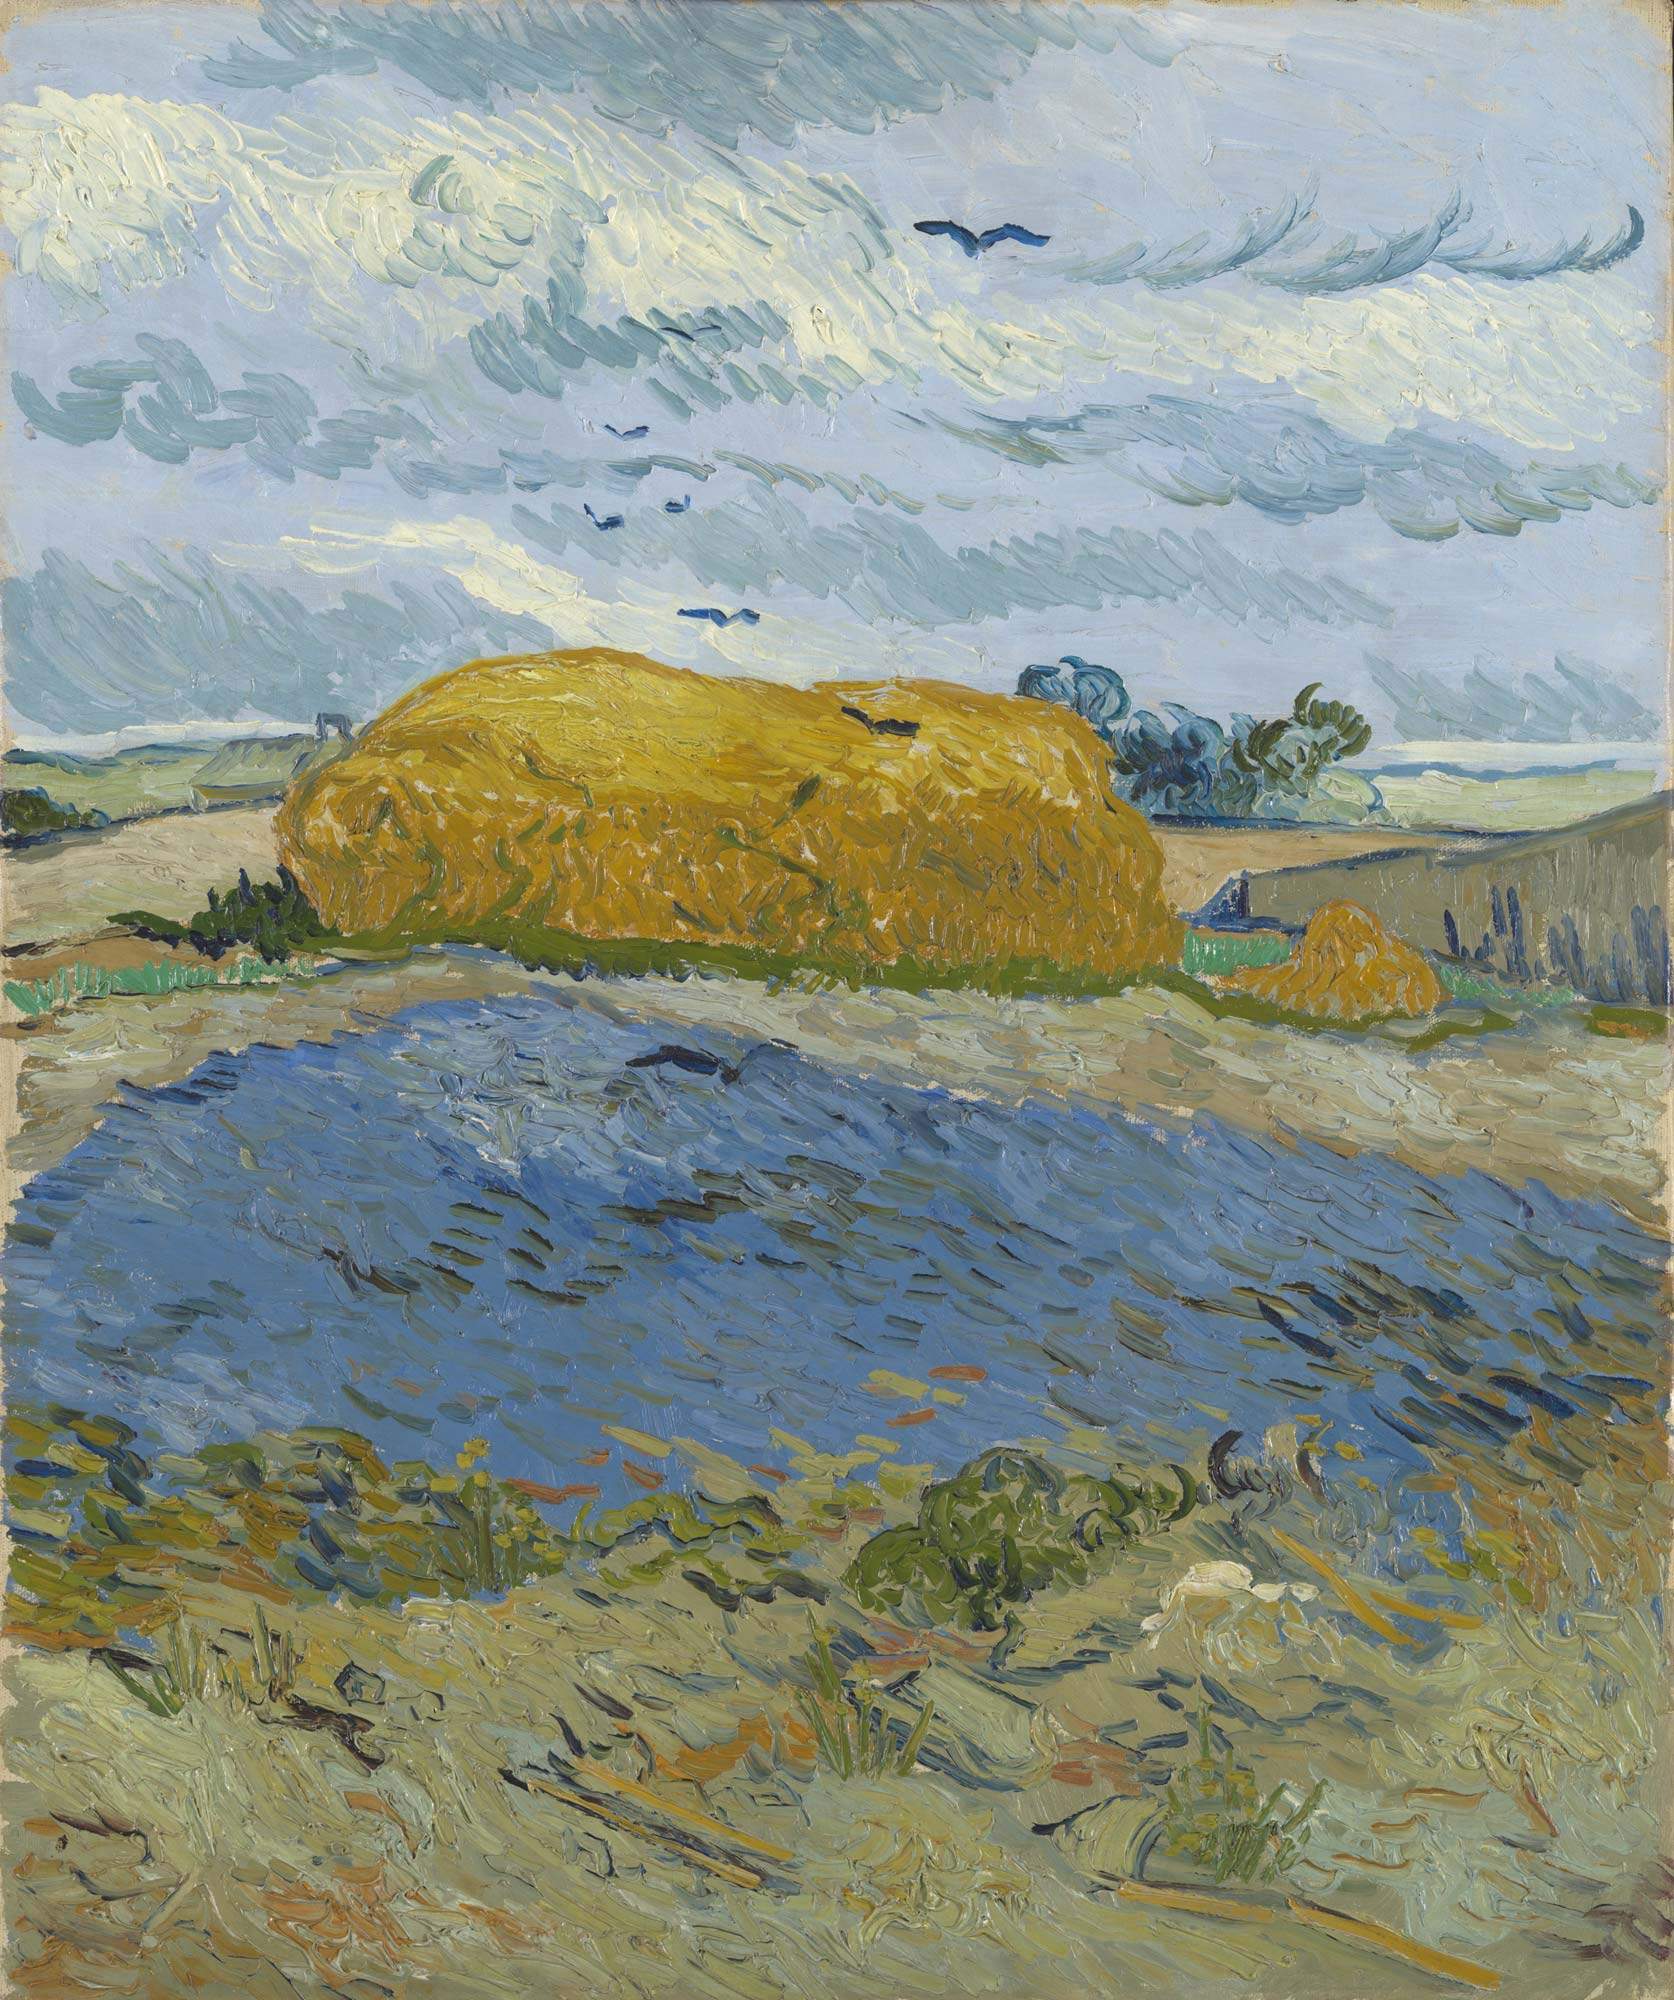 Quadro su tela, Vecchio in tristezza V. van Gogh